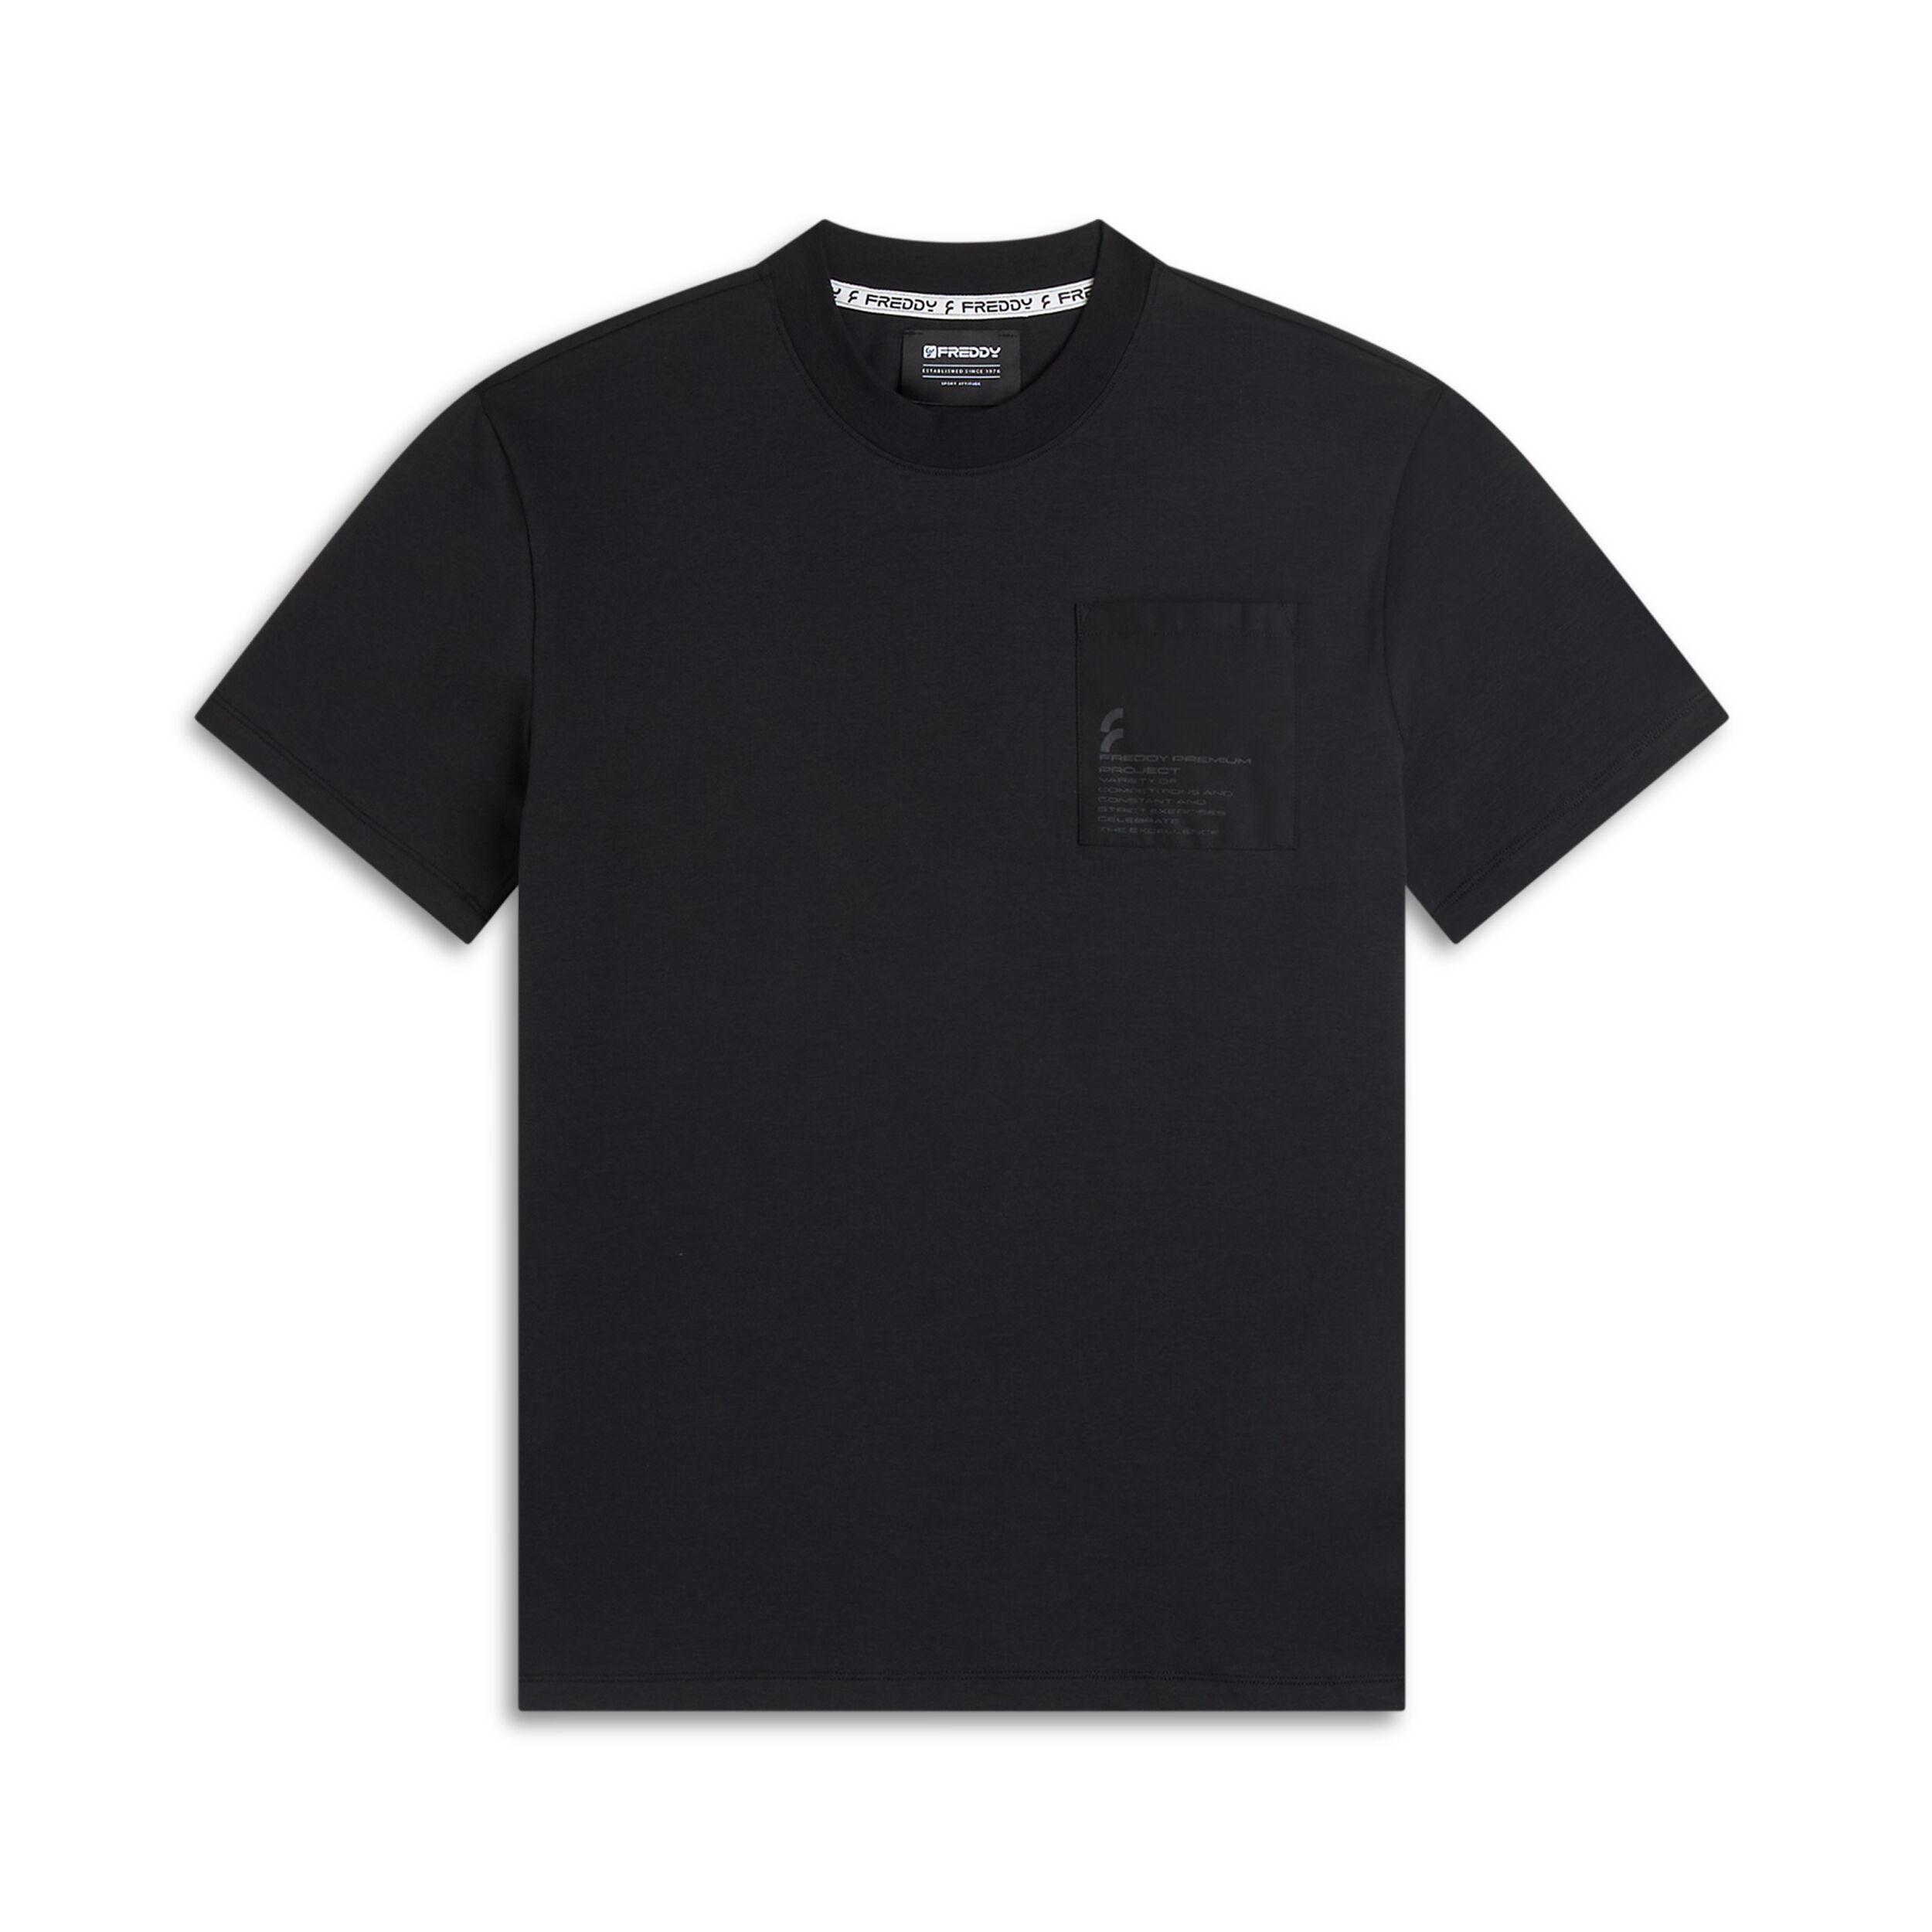 Freddy T-shirt da uomo in jersey con taschino e stampa in tono Nero Uomo Large